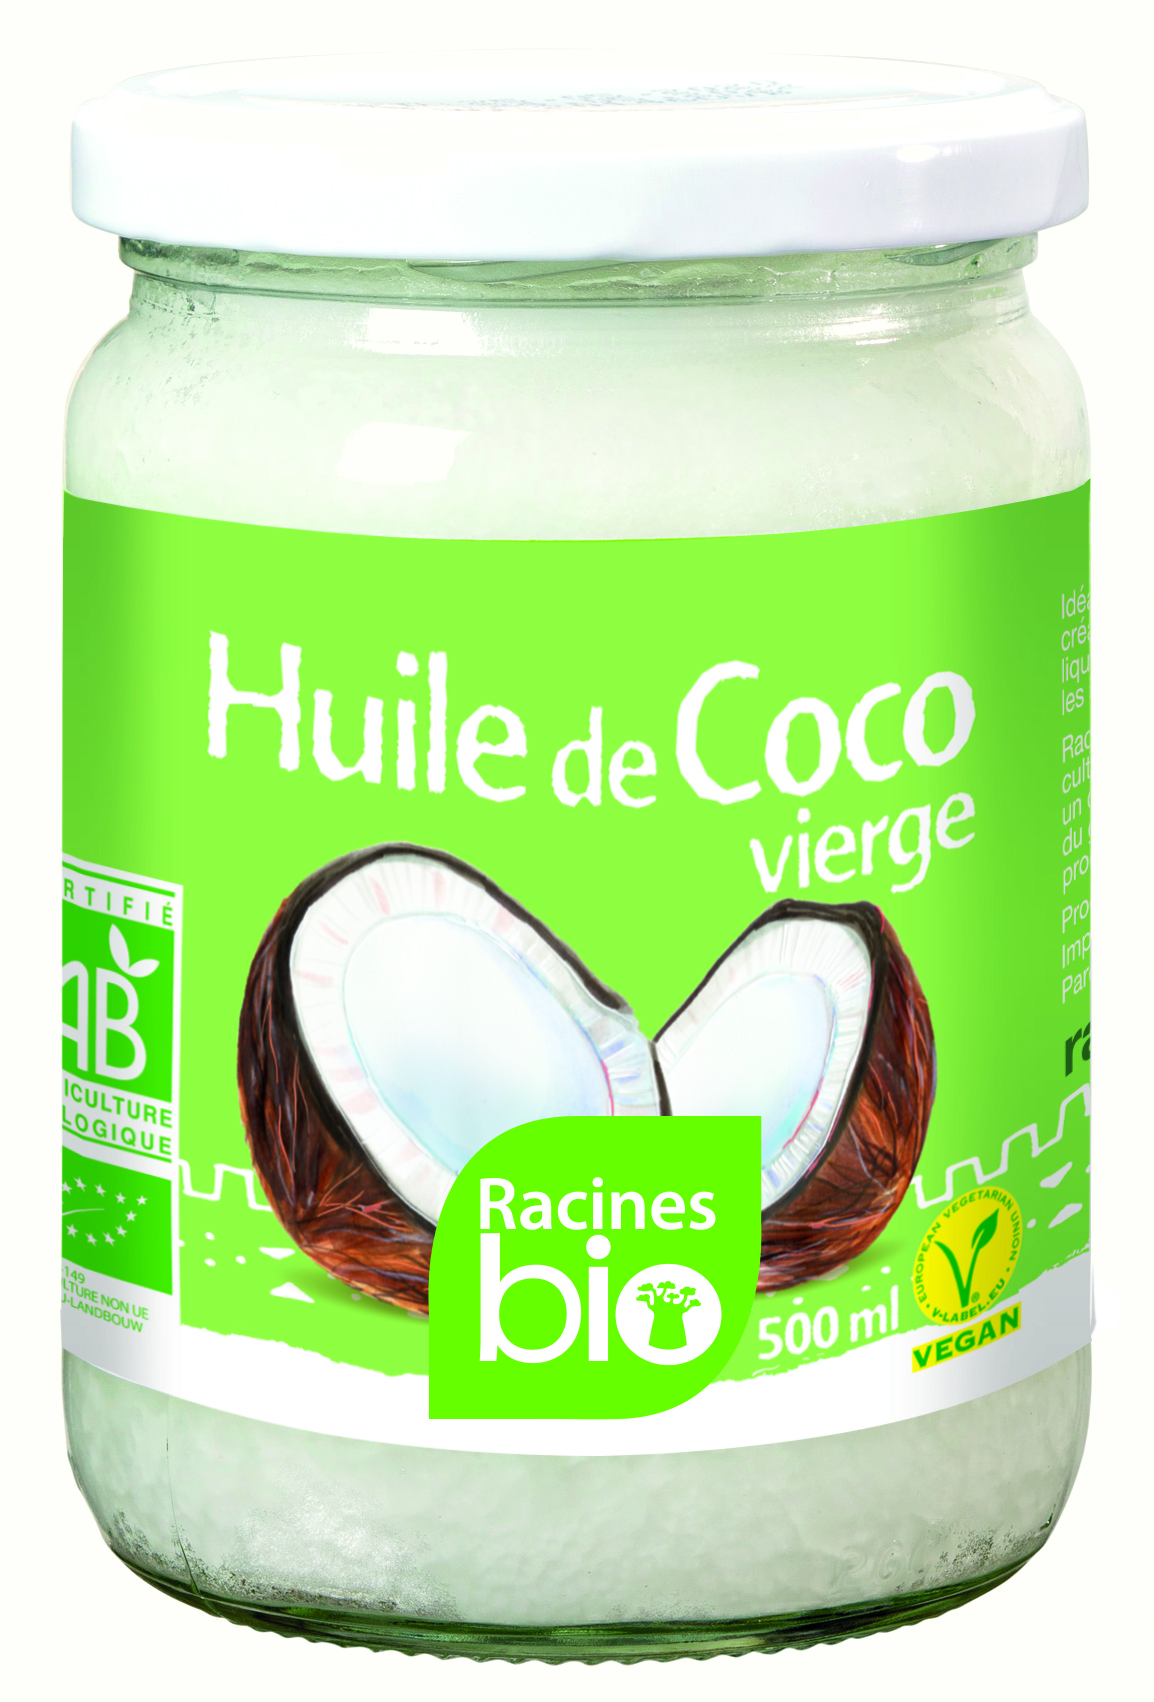 Huile De Coco Vierge (12 X 500 Ml) - Racines Bio